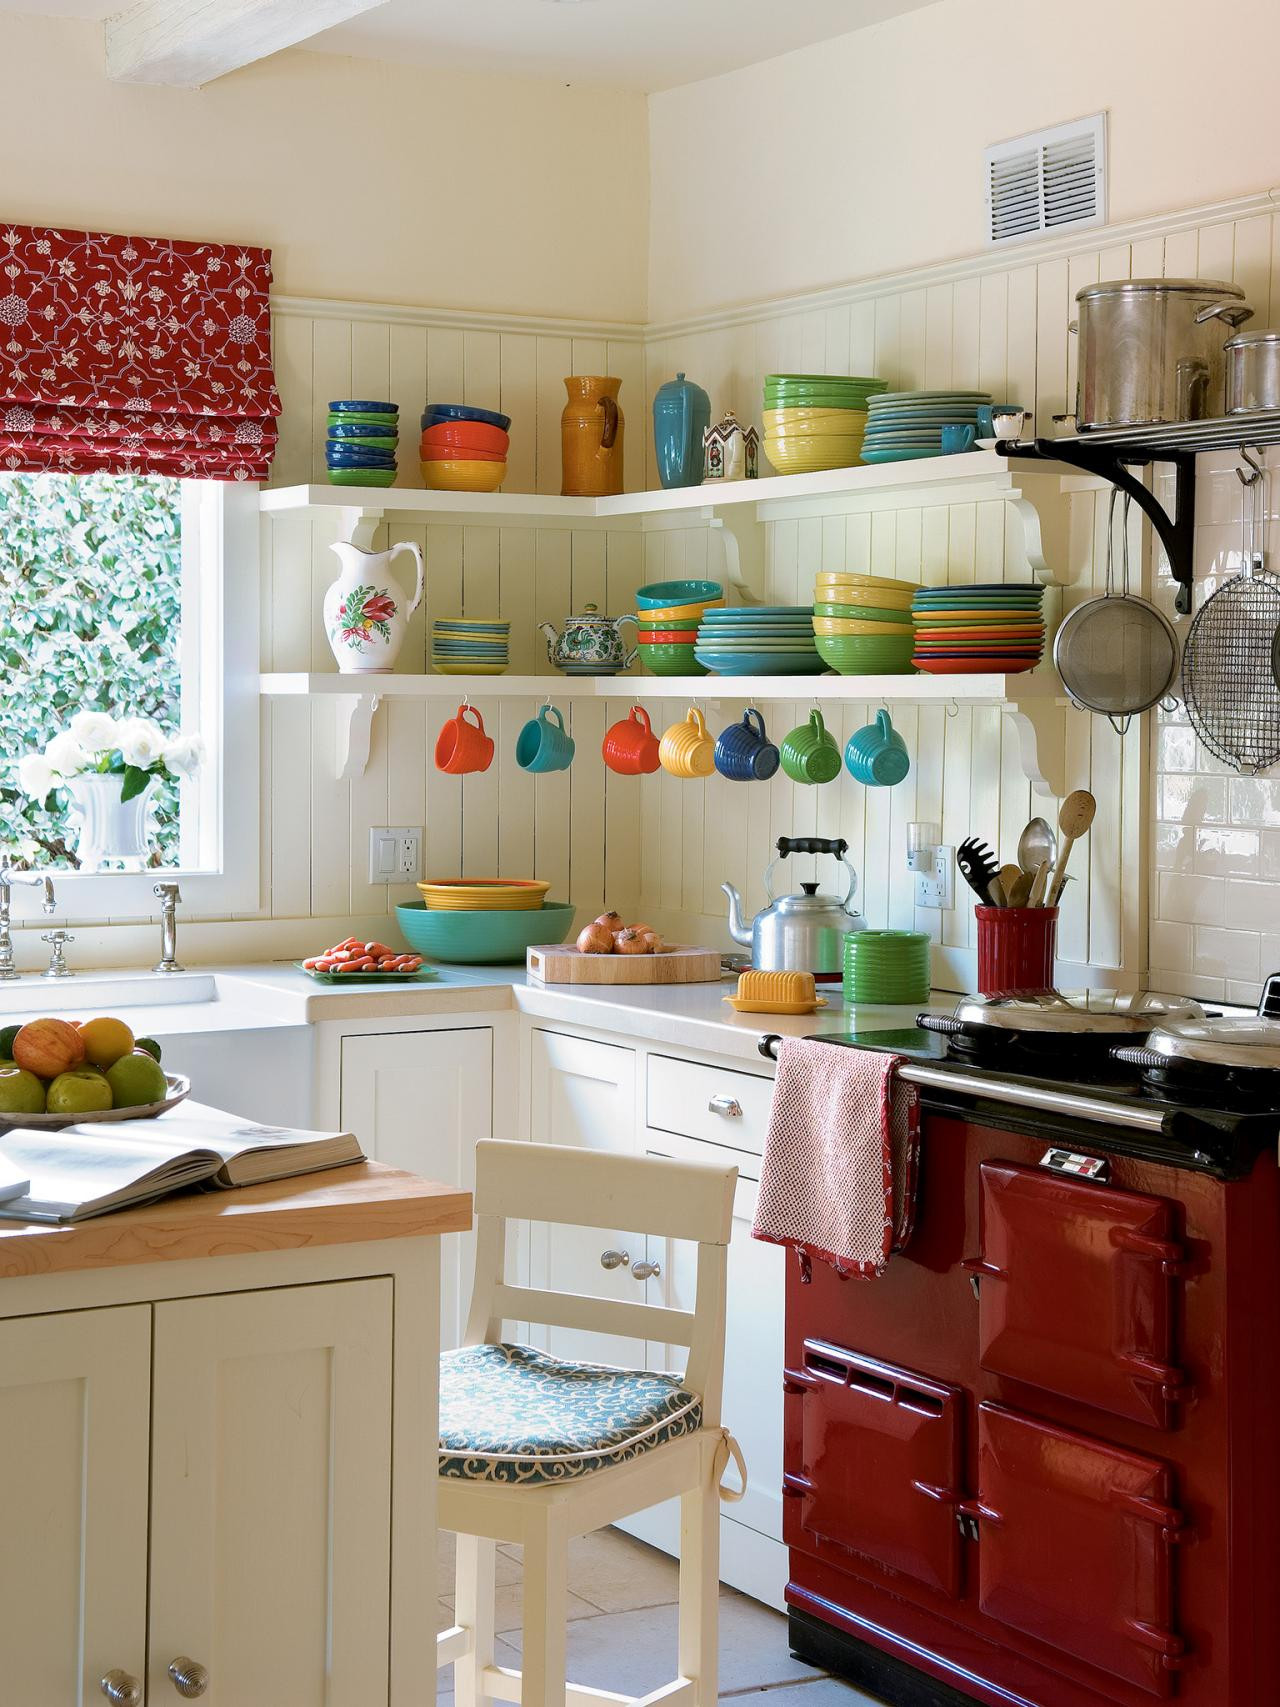 Small Kitchen Design Pics
 31 Creative Small Kitchen Design Ideas